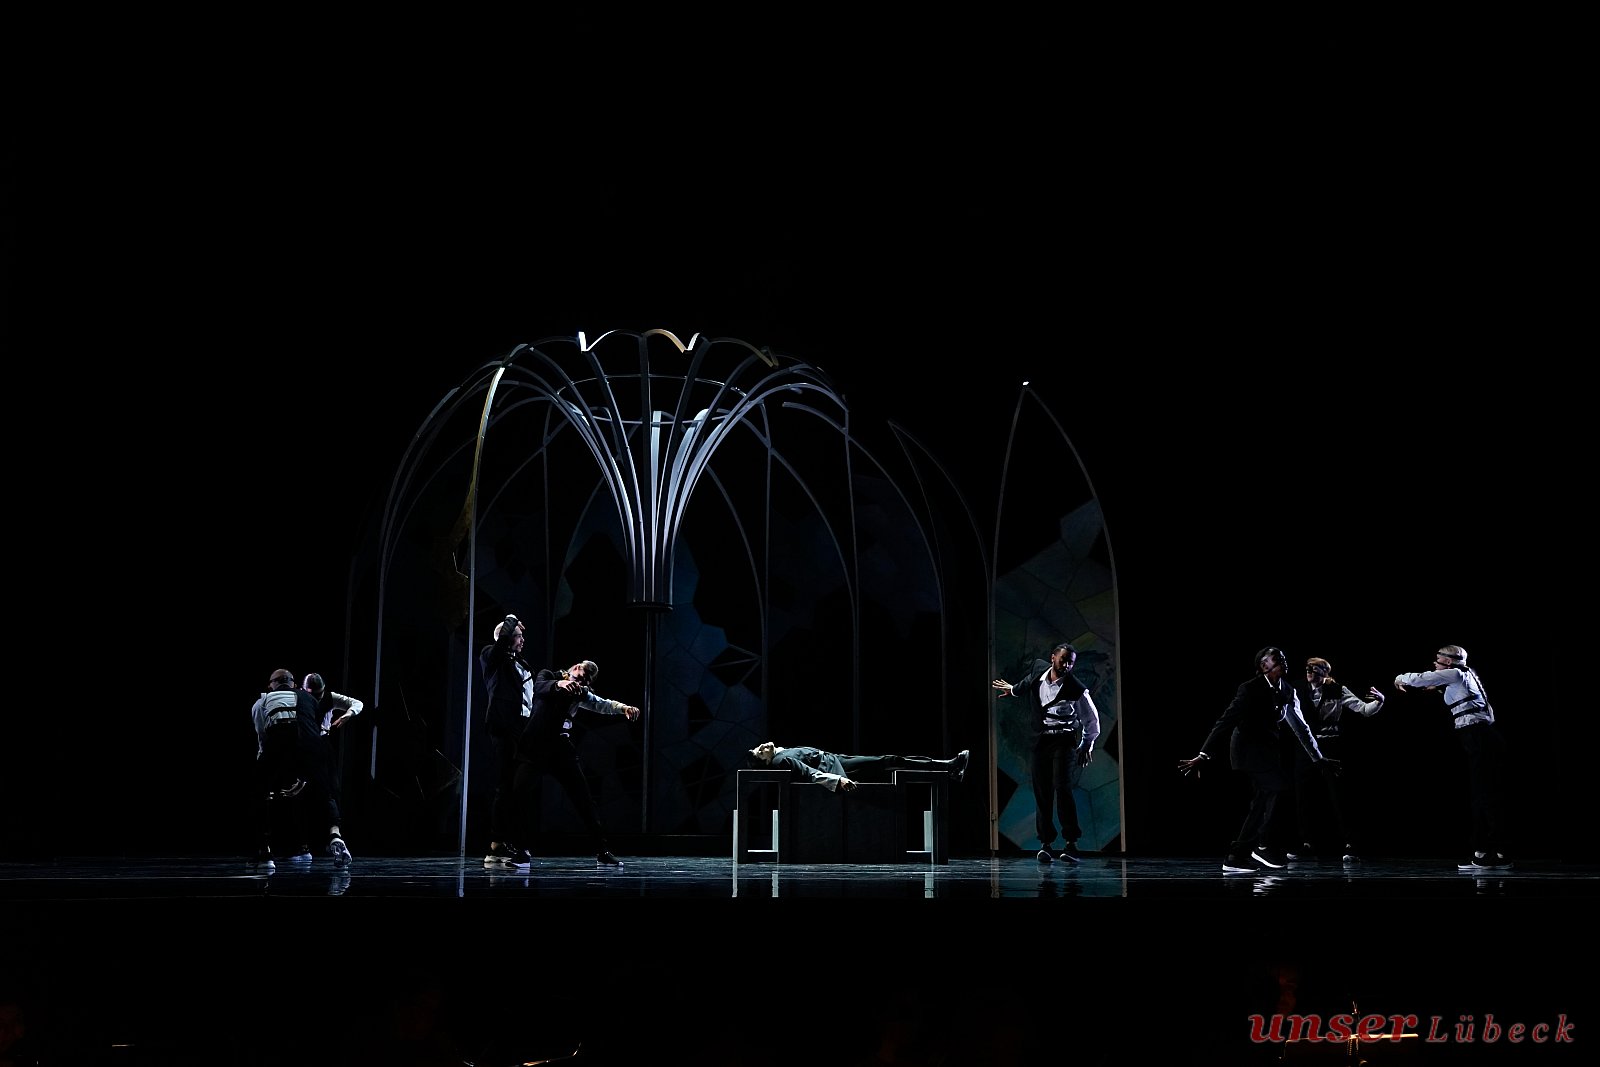 Improvisationskollektiv The Way (Tänzer*innen), Adriana di Paola (Cambise; Mitte liegend) - Alessandro Scarlattis „Il Cambise“ im Theater Kiel